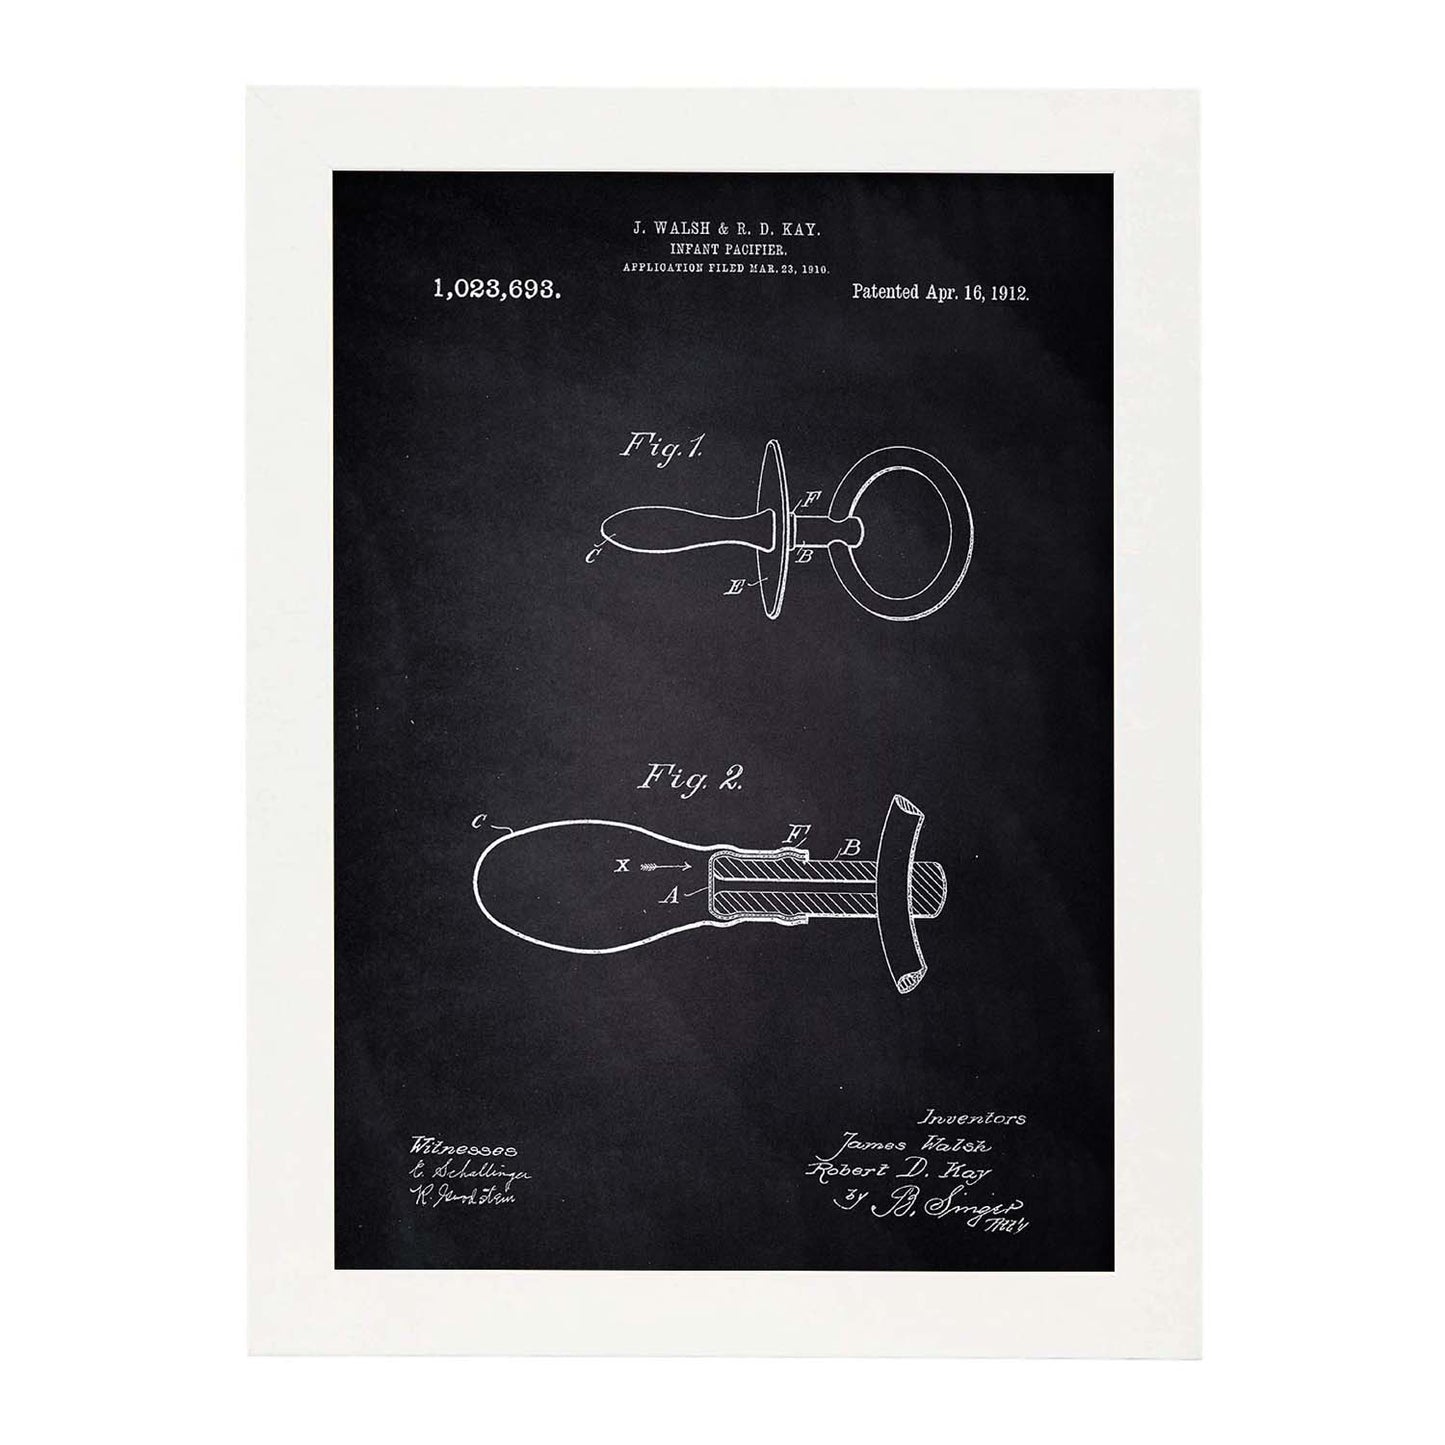 Poster con patente de Chupete 2. Lámina con diseño de patente antigua-Artwork-Nacnic-A3-Marco Blanco-Nacnic Estudio SL